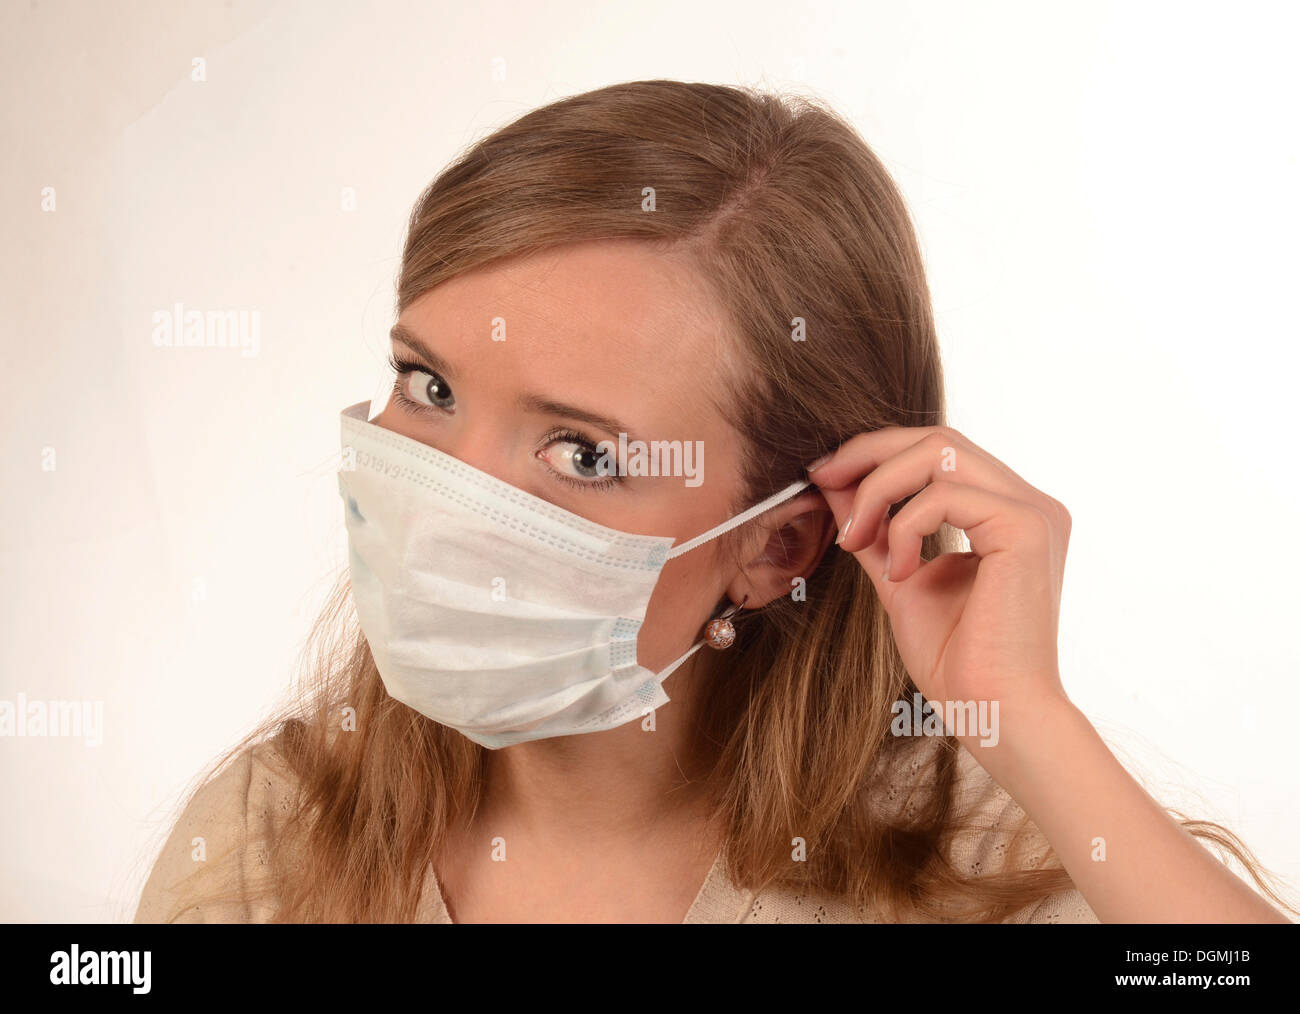 Грипп на лице. Маска медицинская. Надевать медицинскую маску. Медицинская маска для лица. Надевайте защитные маски.